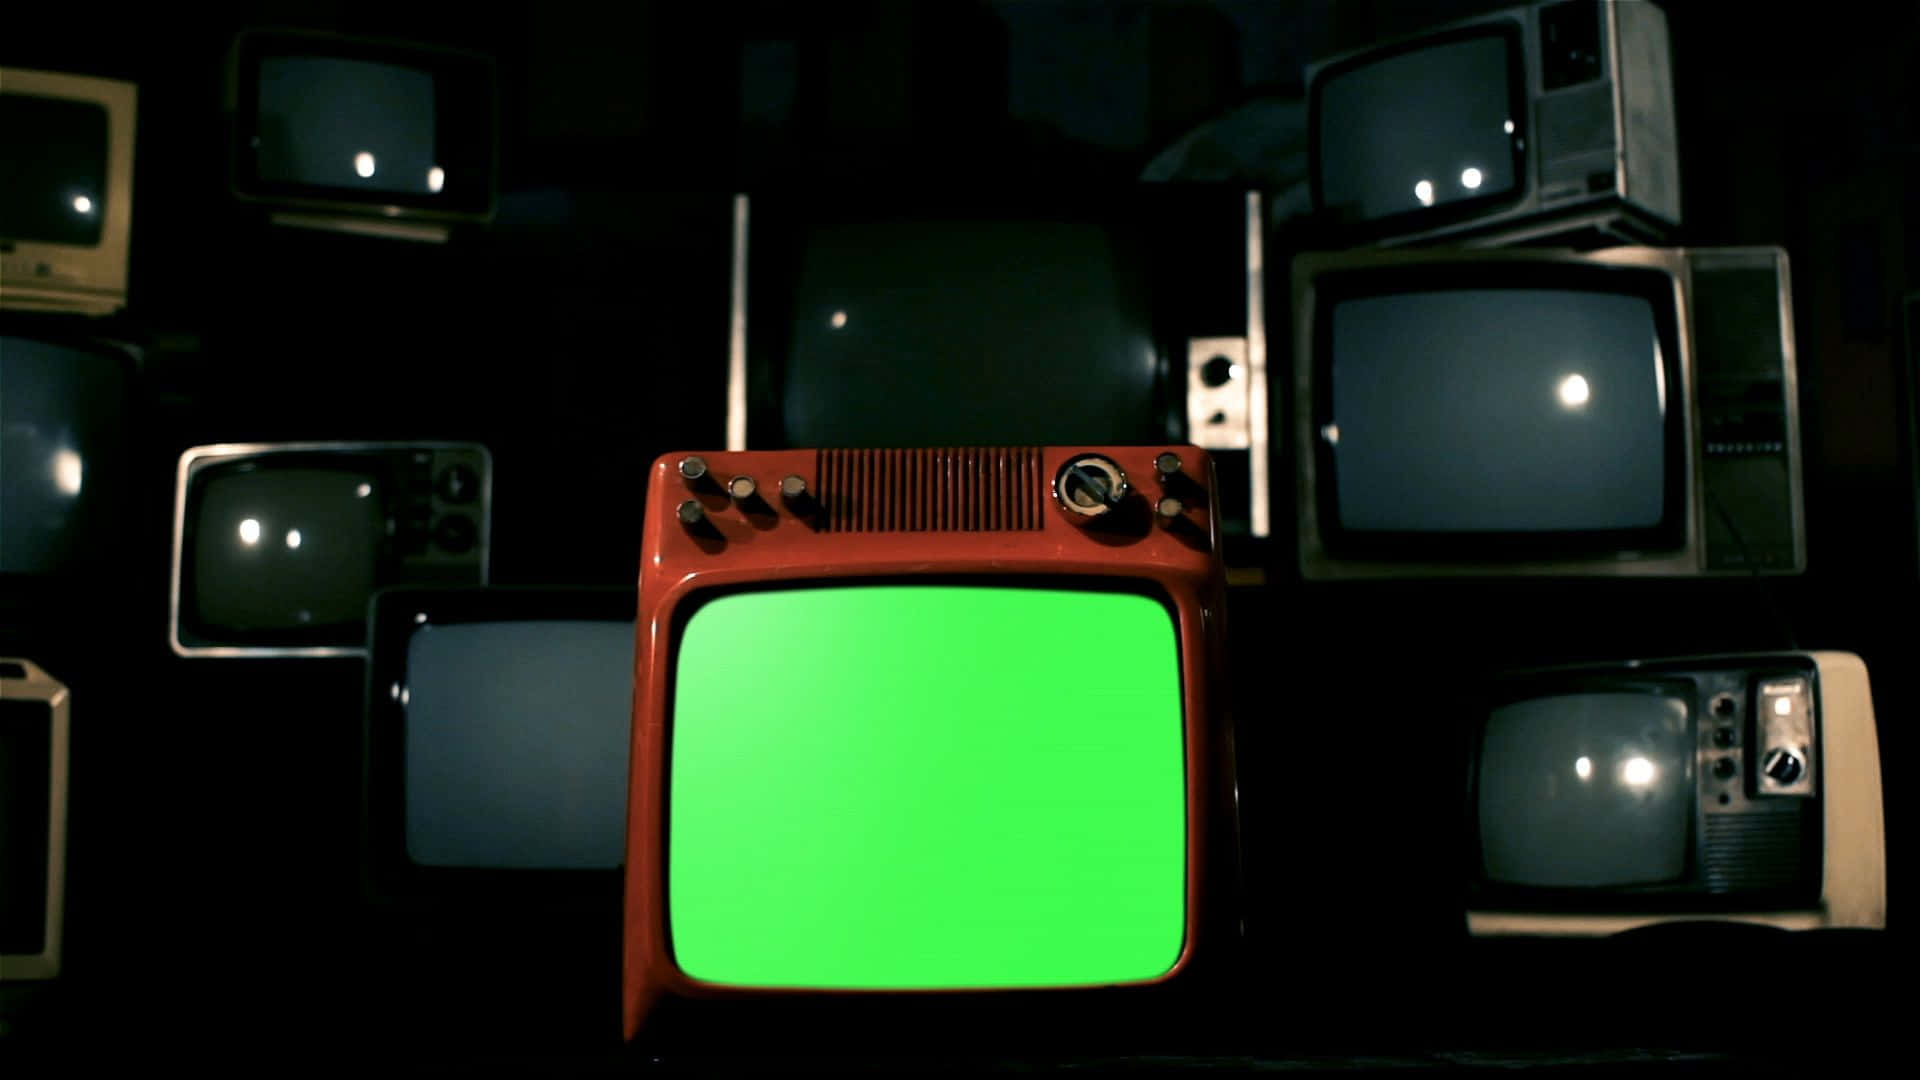 Einegruppe Von Fernsehern Mit Grünen Bildschirmen.